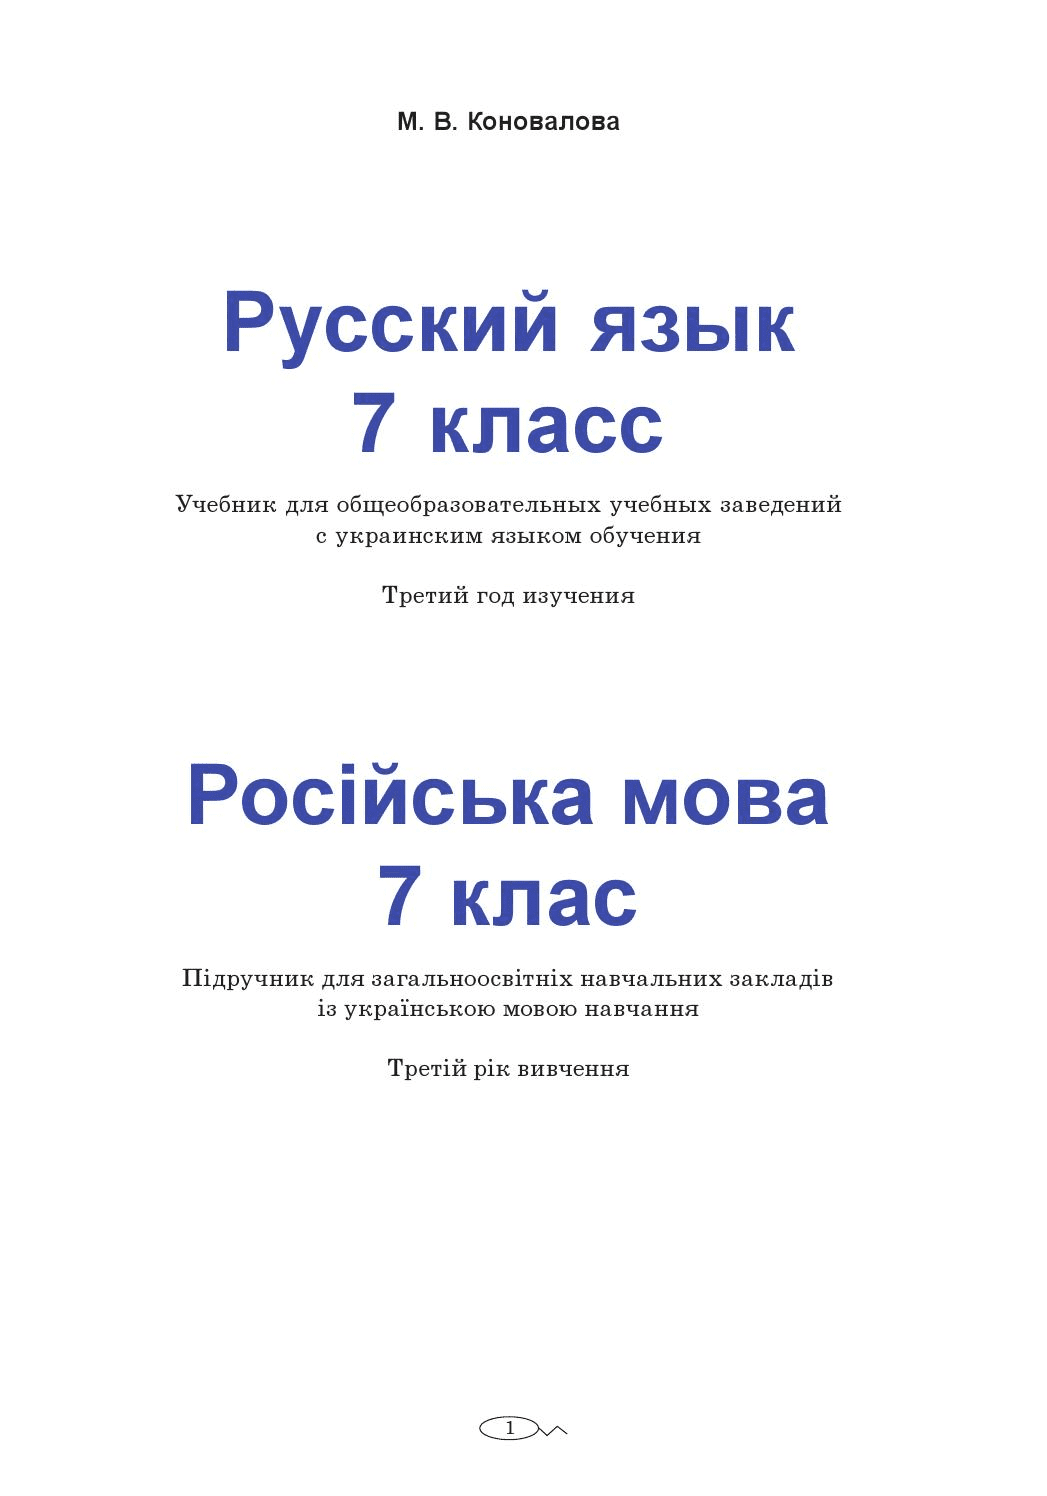 Русский язык 7 класс - Коновалова М.